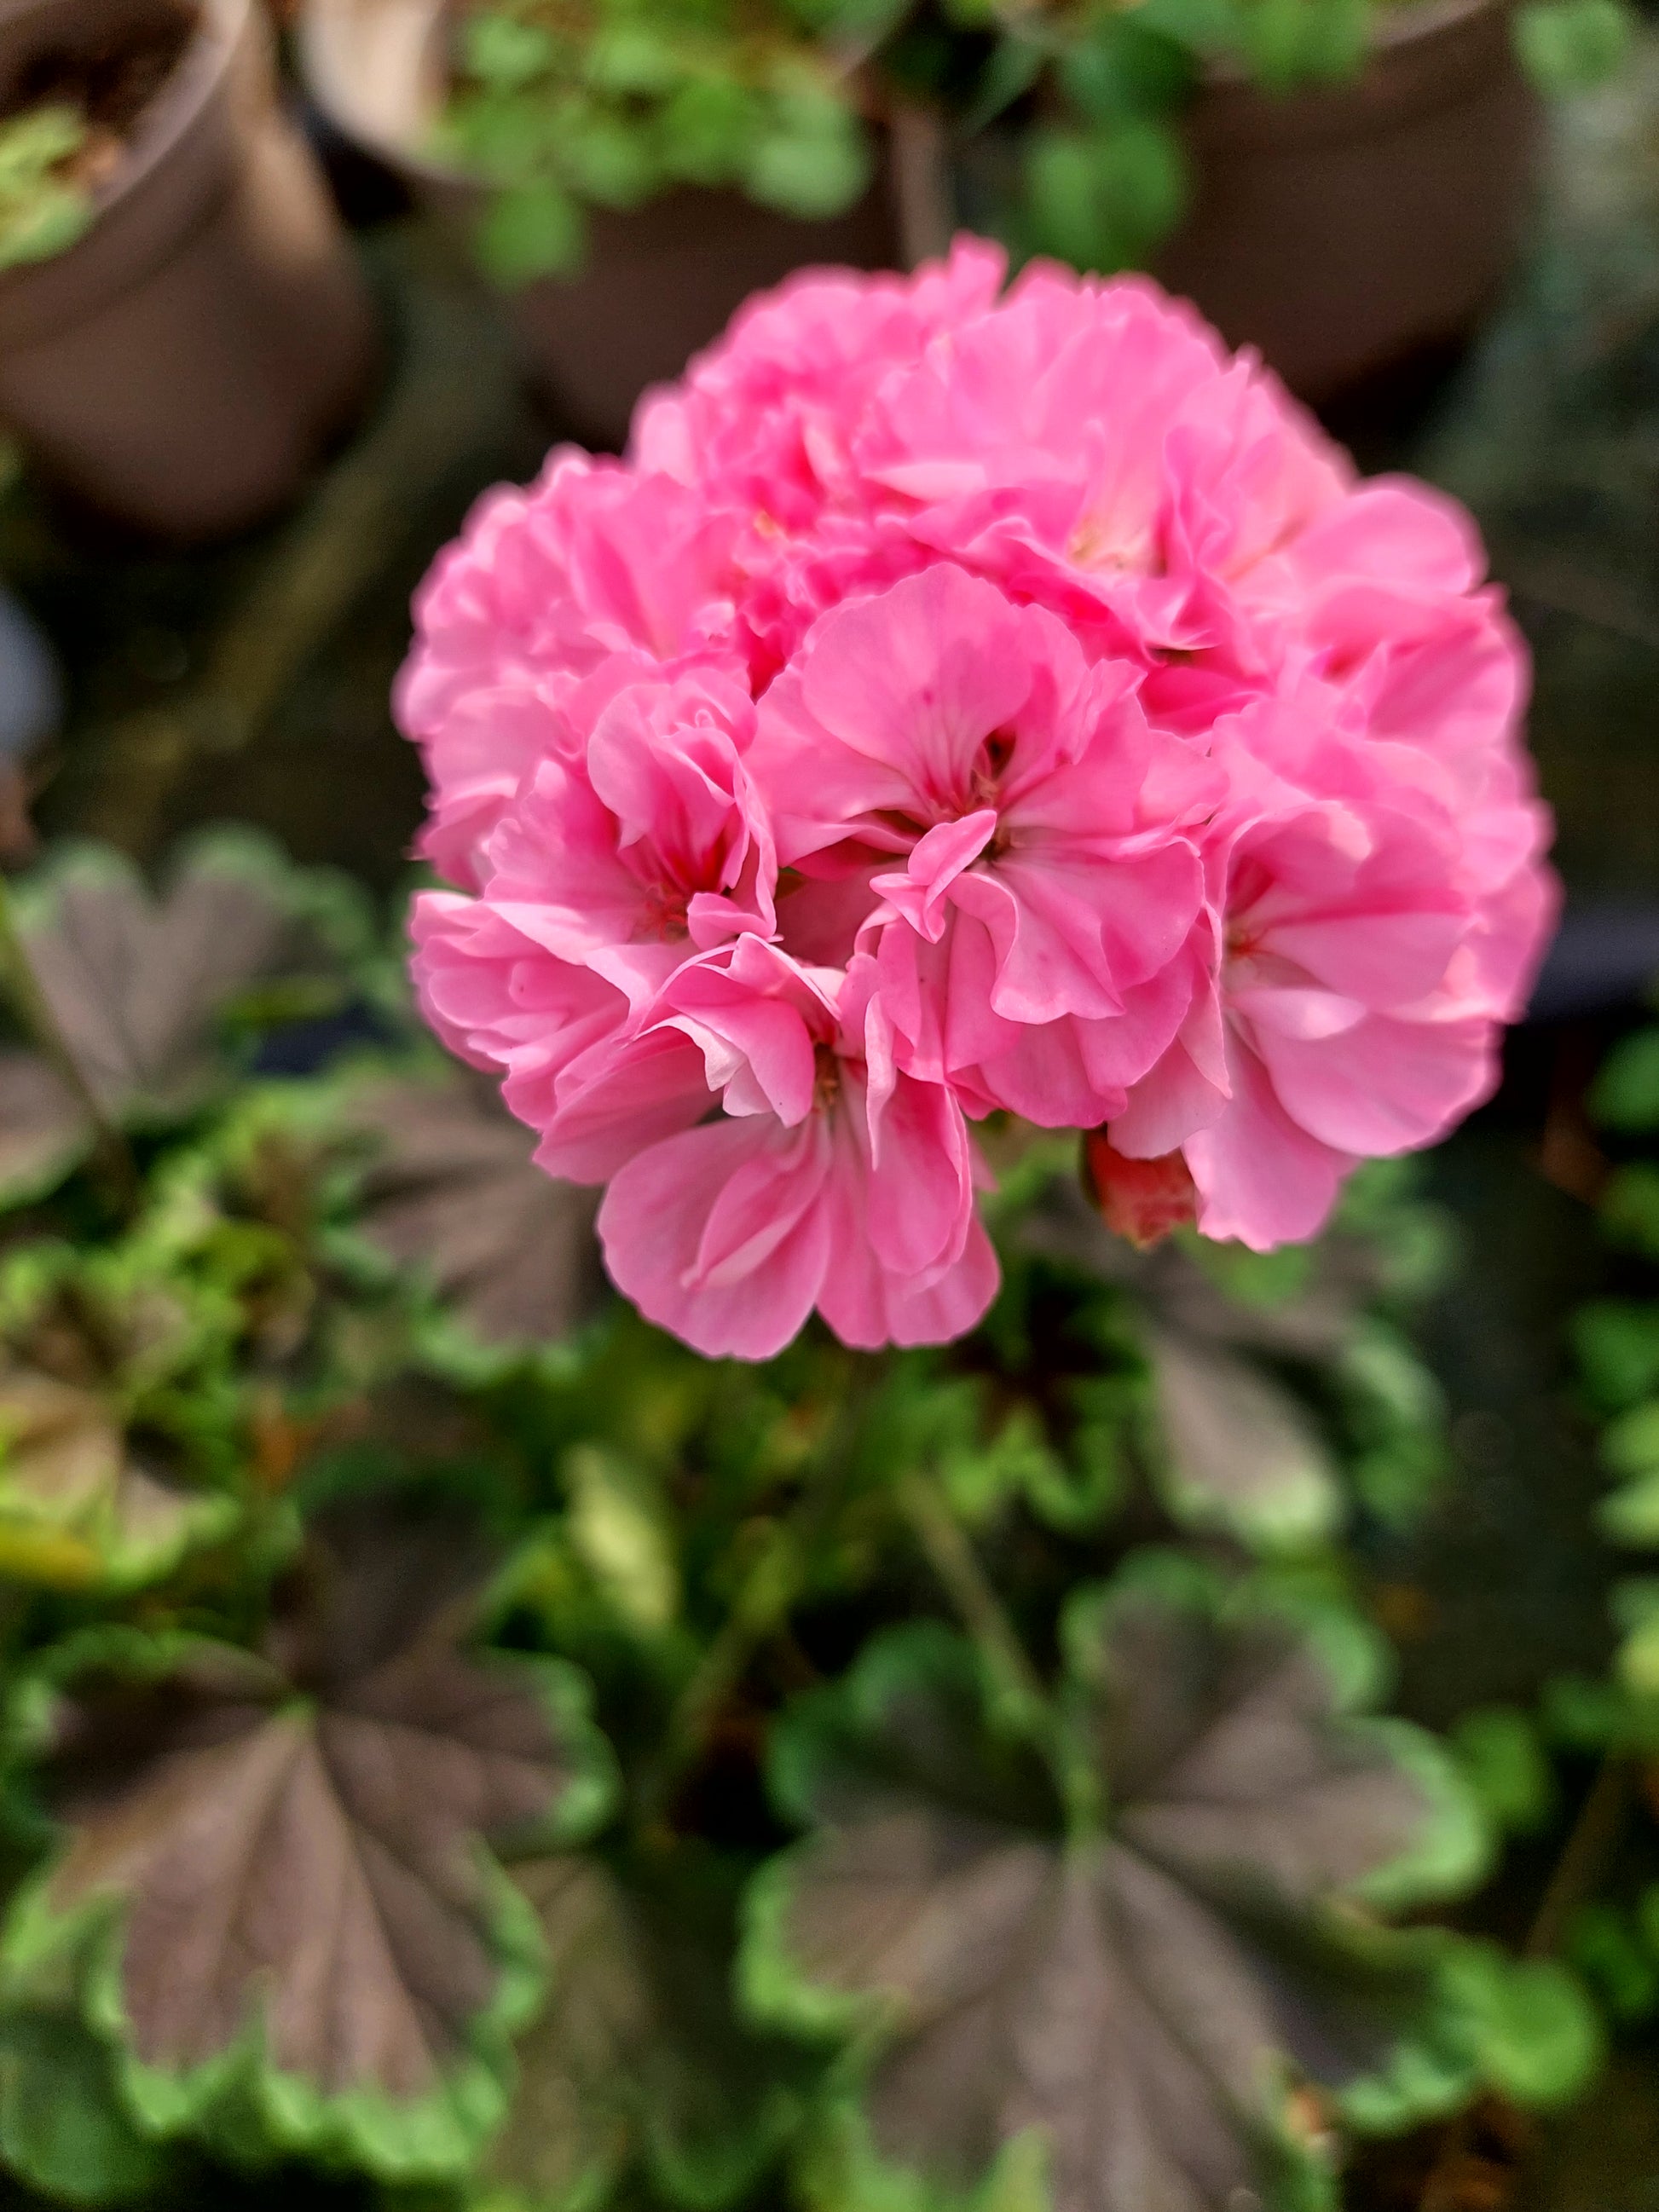 Pelargonium 'Odensjö Black Mamba': geranio con incantevoli fiori color rosa garofano, presentato con cura in un vaso di terracotta su un luminoso tavolo di legno.